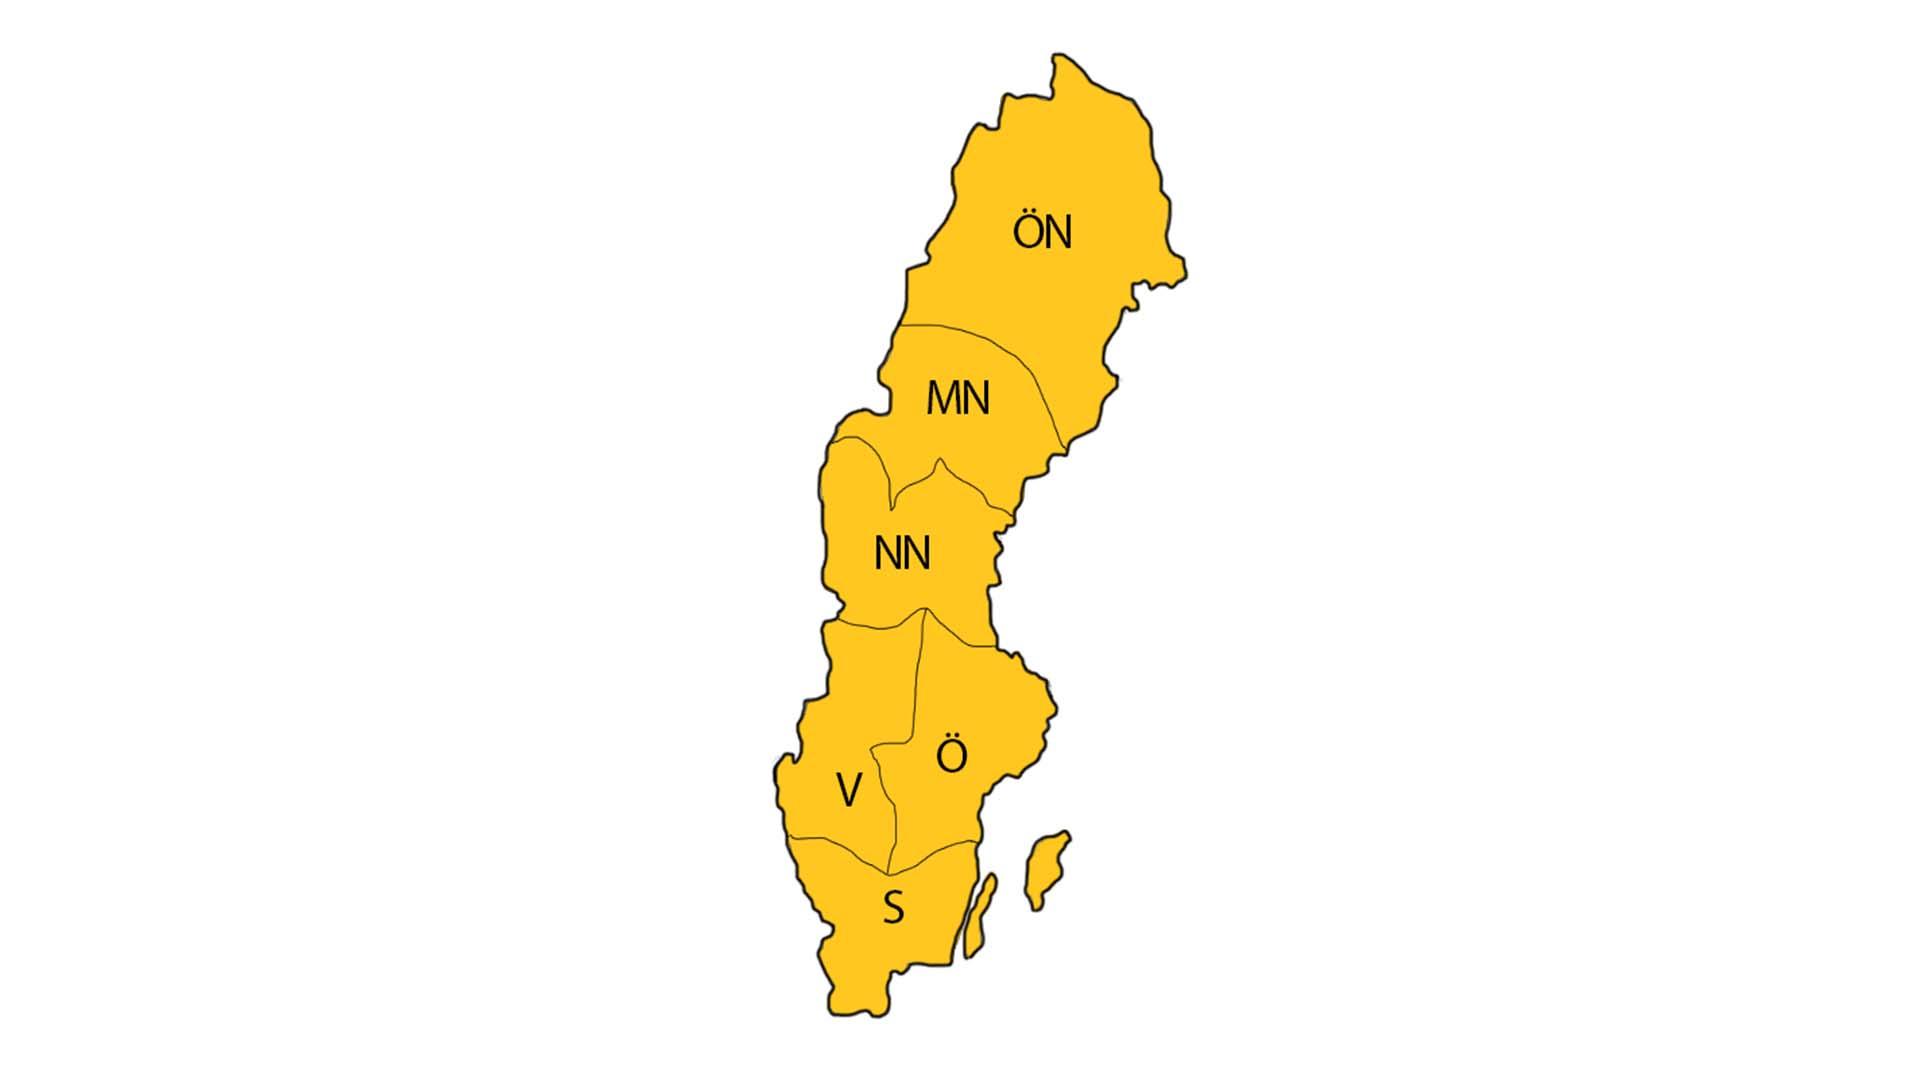 En kart på Sverige med markeringar för vilket distrikt som täcker vilken del av Sverige.